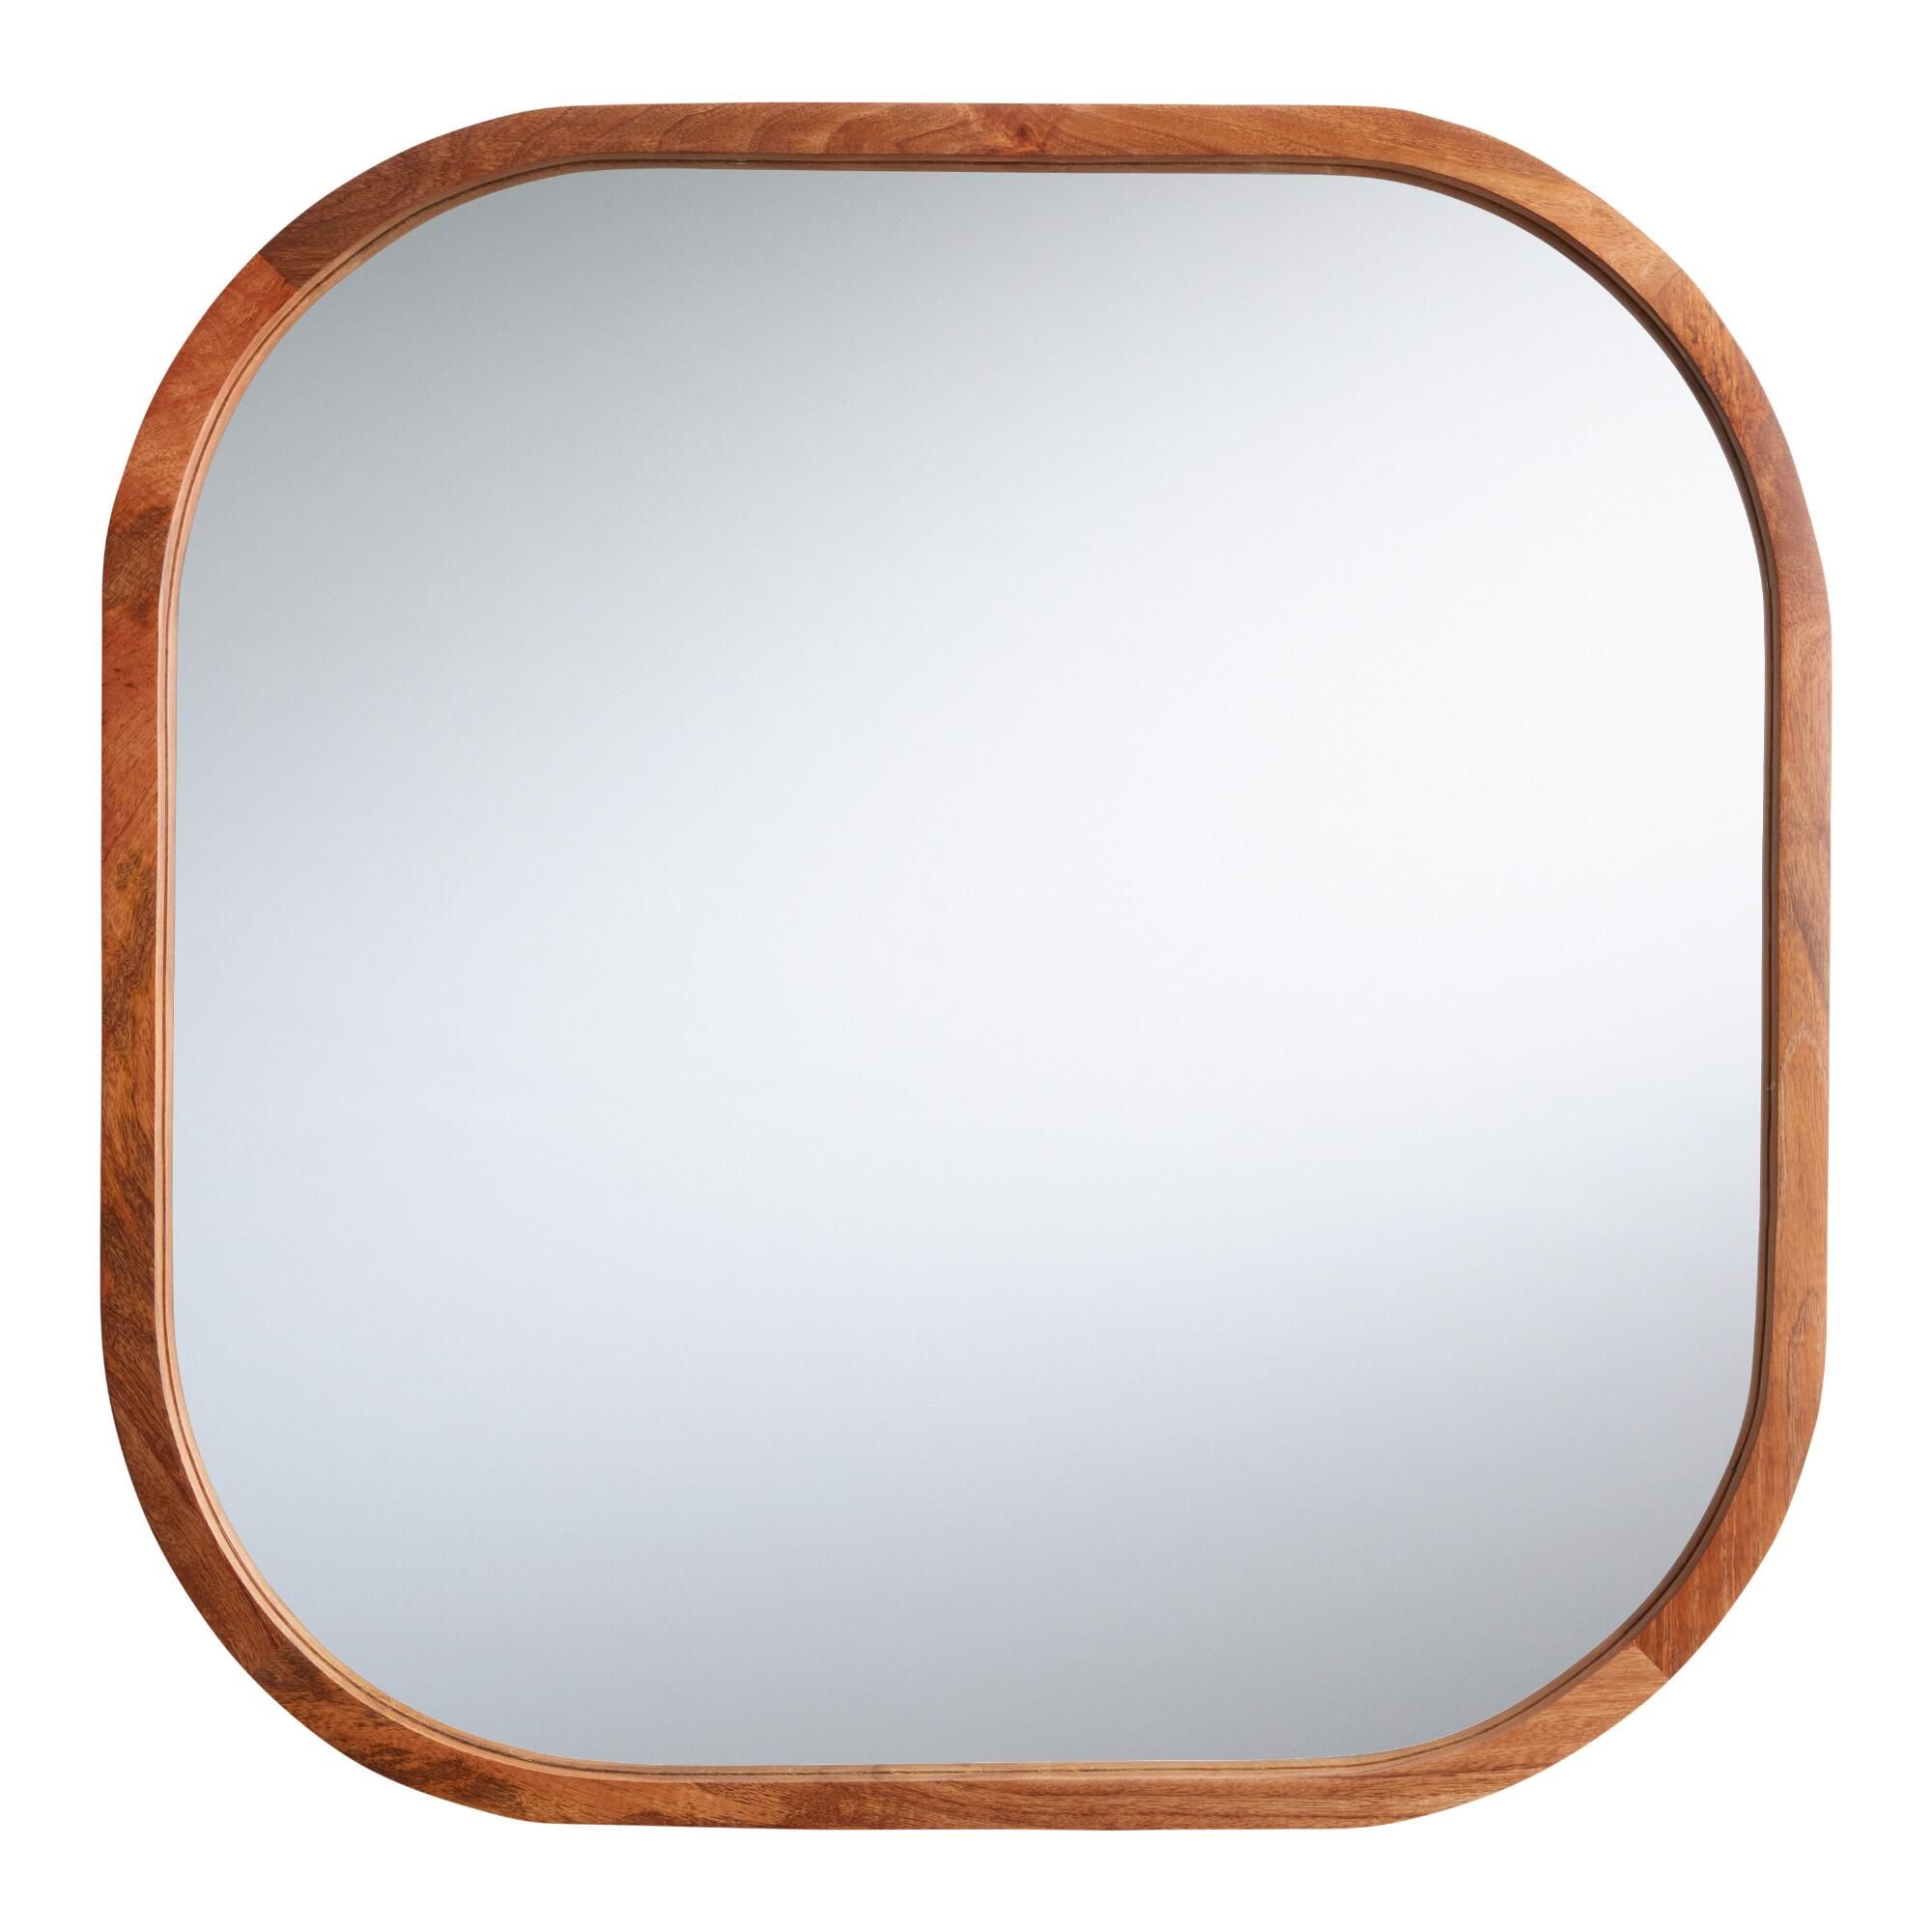 Rounded Mango Wood Aiden Mirror: Natural - Medium (36" & under) by World Market | World Market